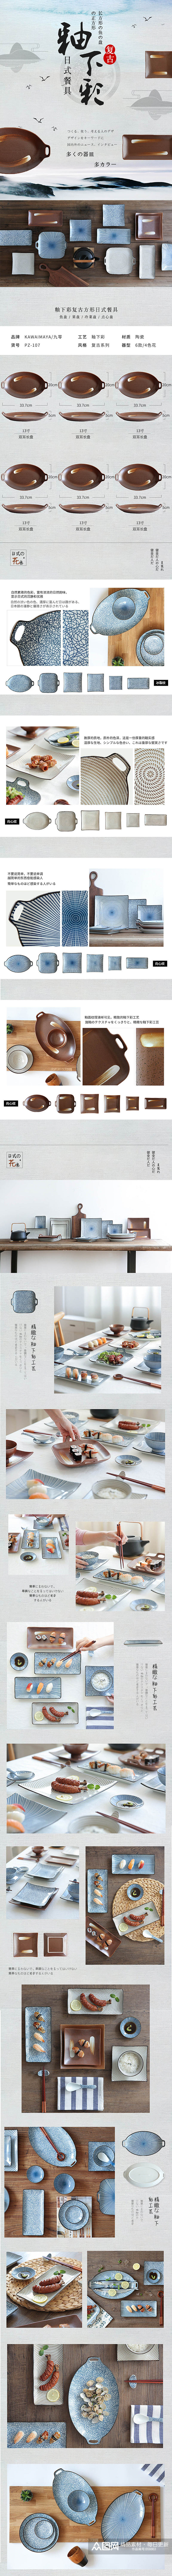 厨房用品复古日式陶瓷餐具详情页素材